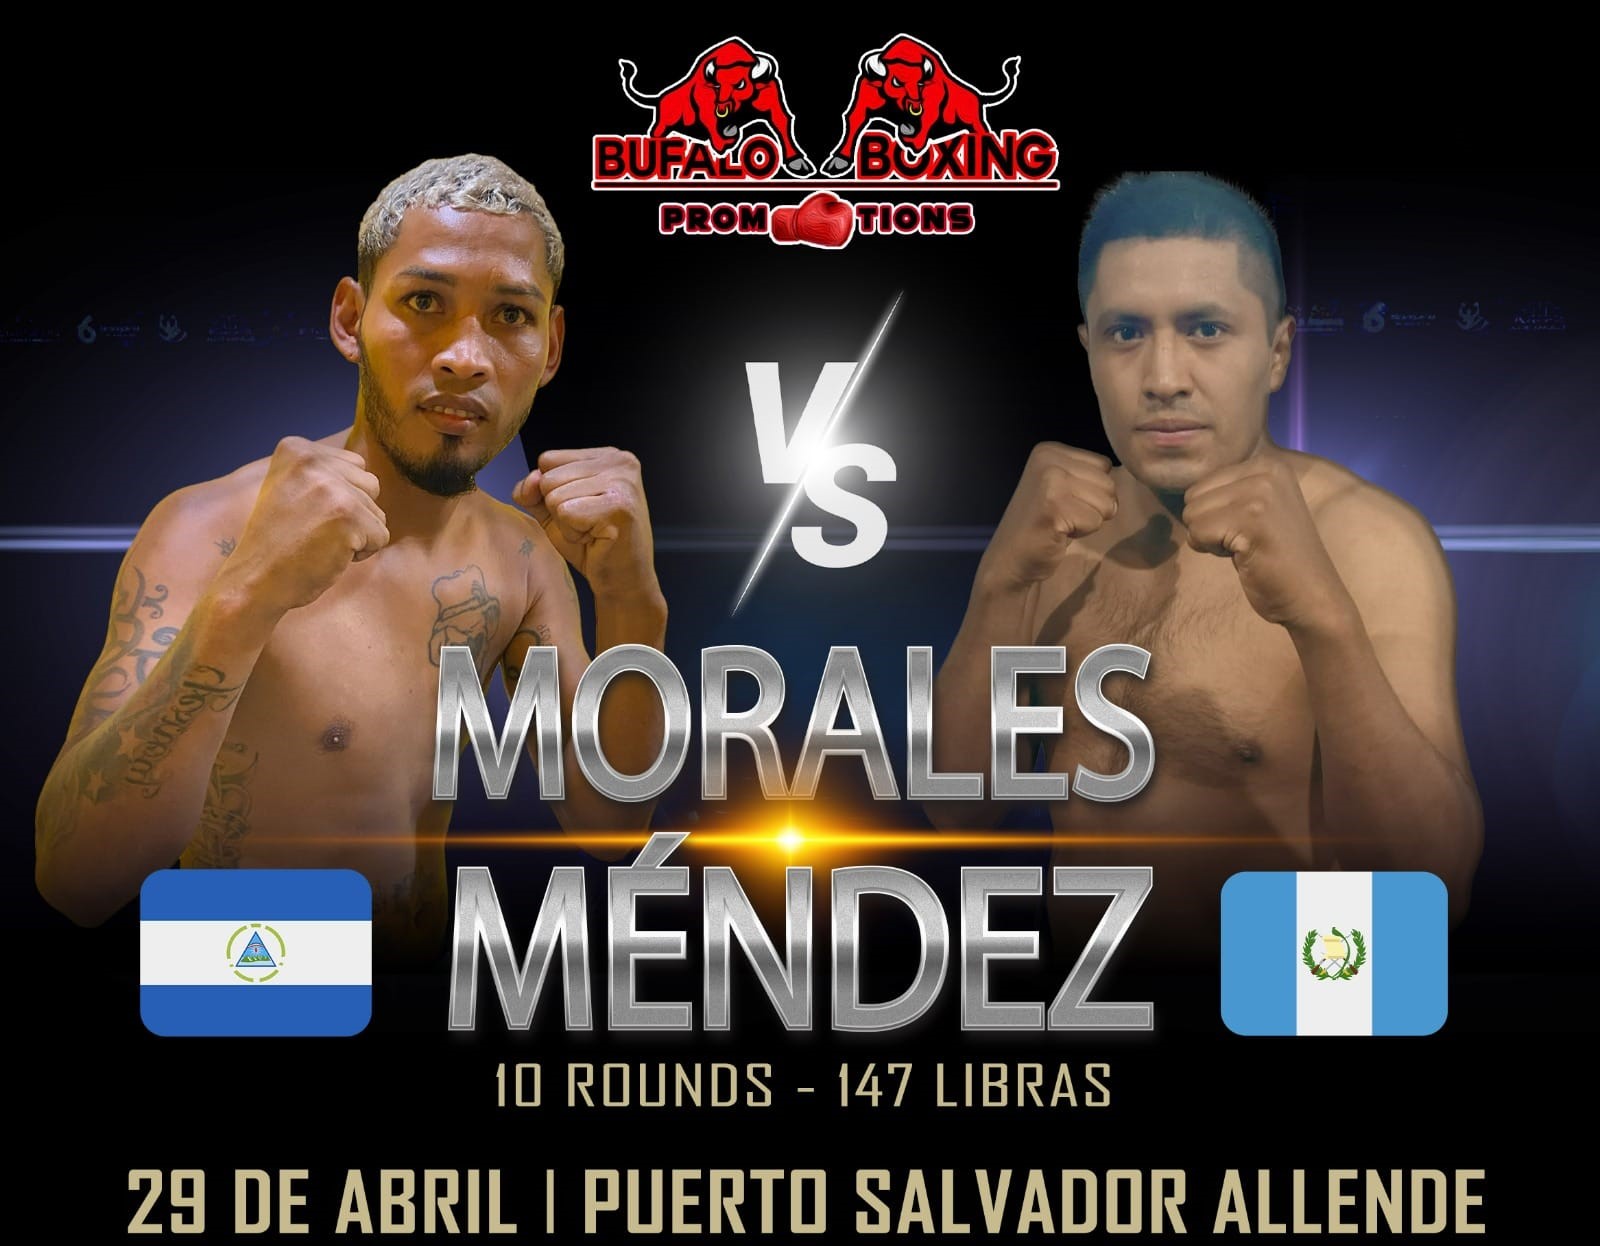 Fin de semana de boxeo en el Puerto Salvador Allende